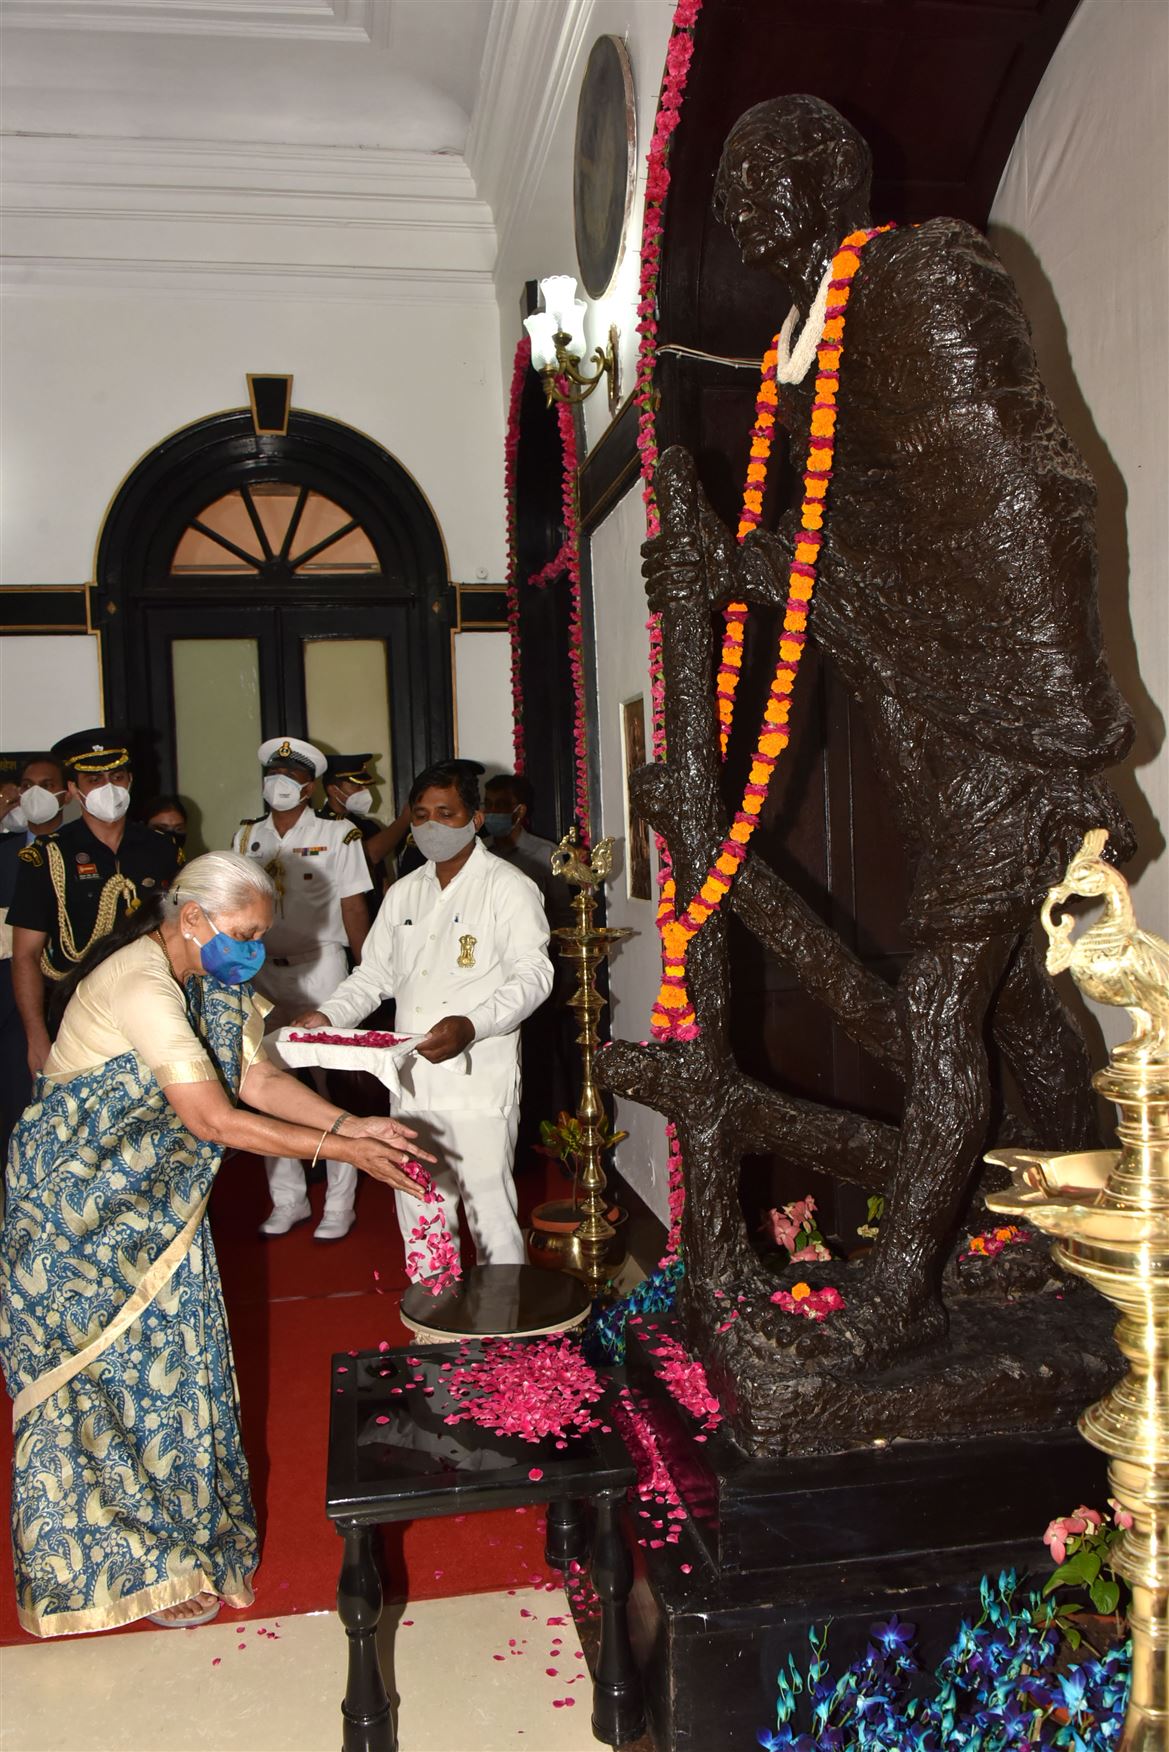 The Governor welcomes Hon. President at Raj Bhavan./राज्यपाल ने राष्ट्रपति का राजभवन में स्वागत किया